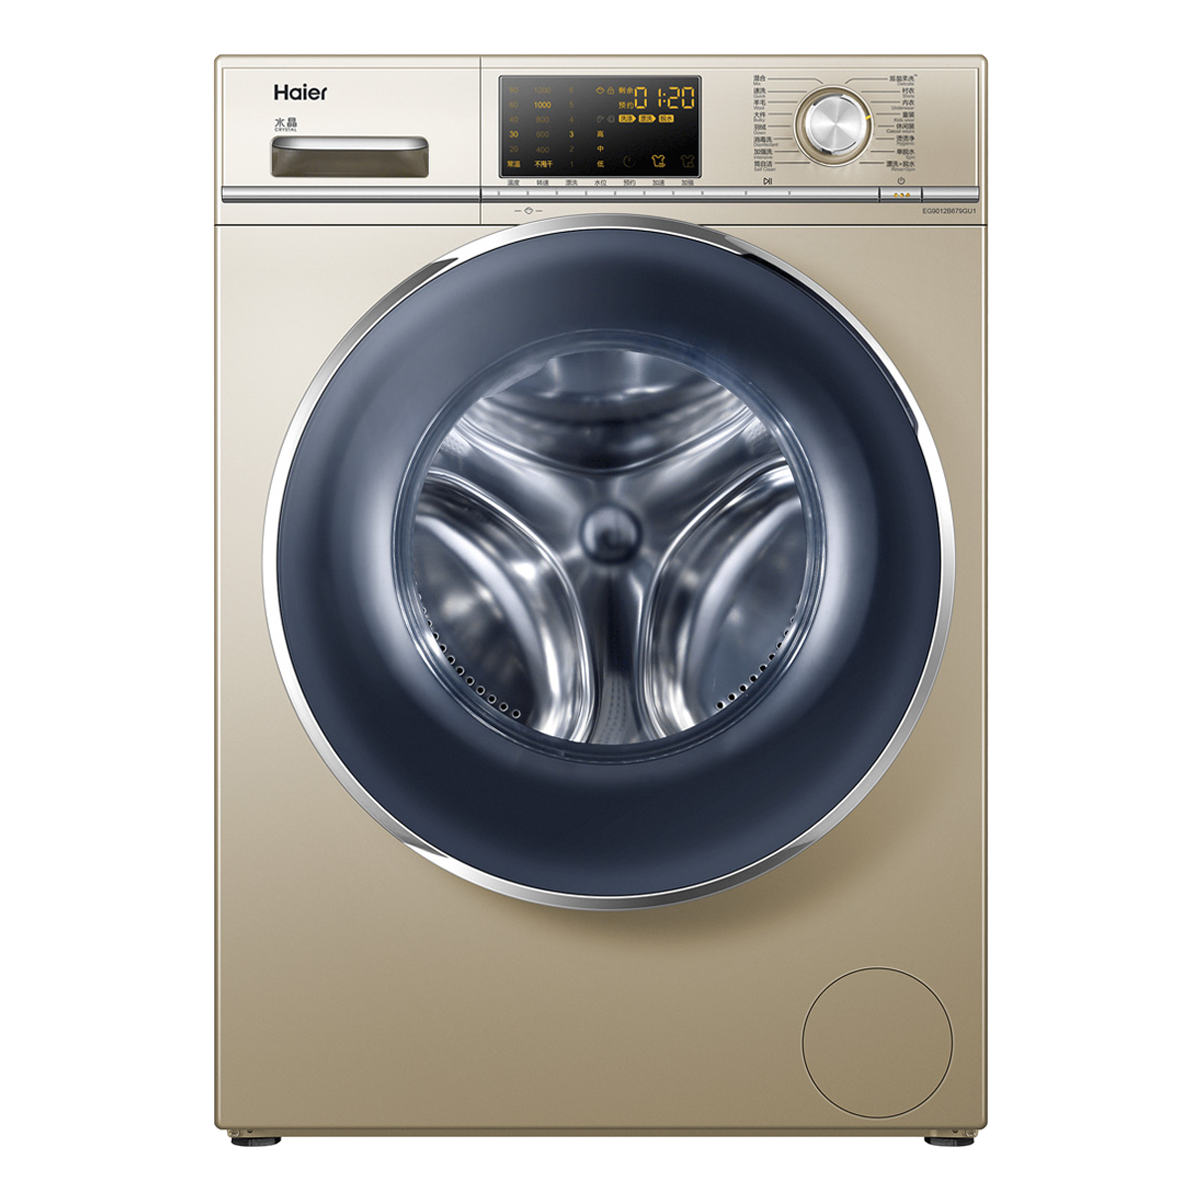 海尔Haier洗衣机 EG9012B679GU1 说明书